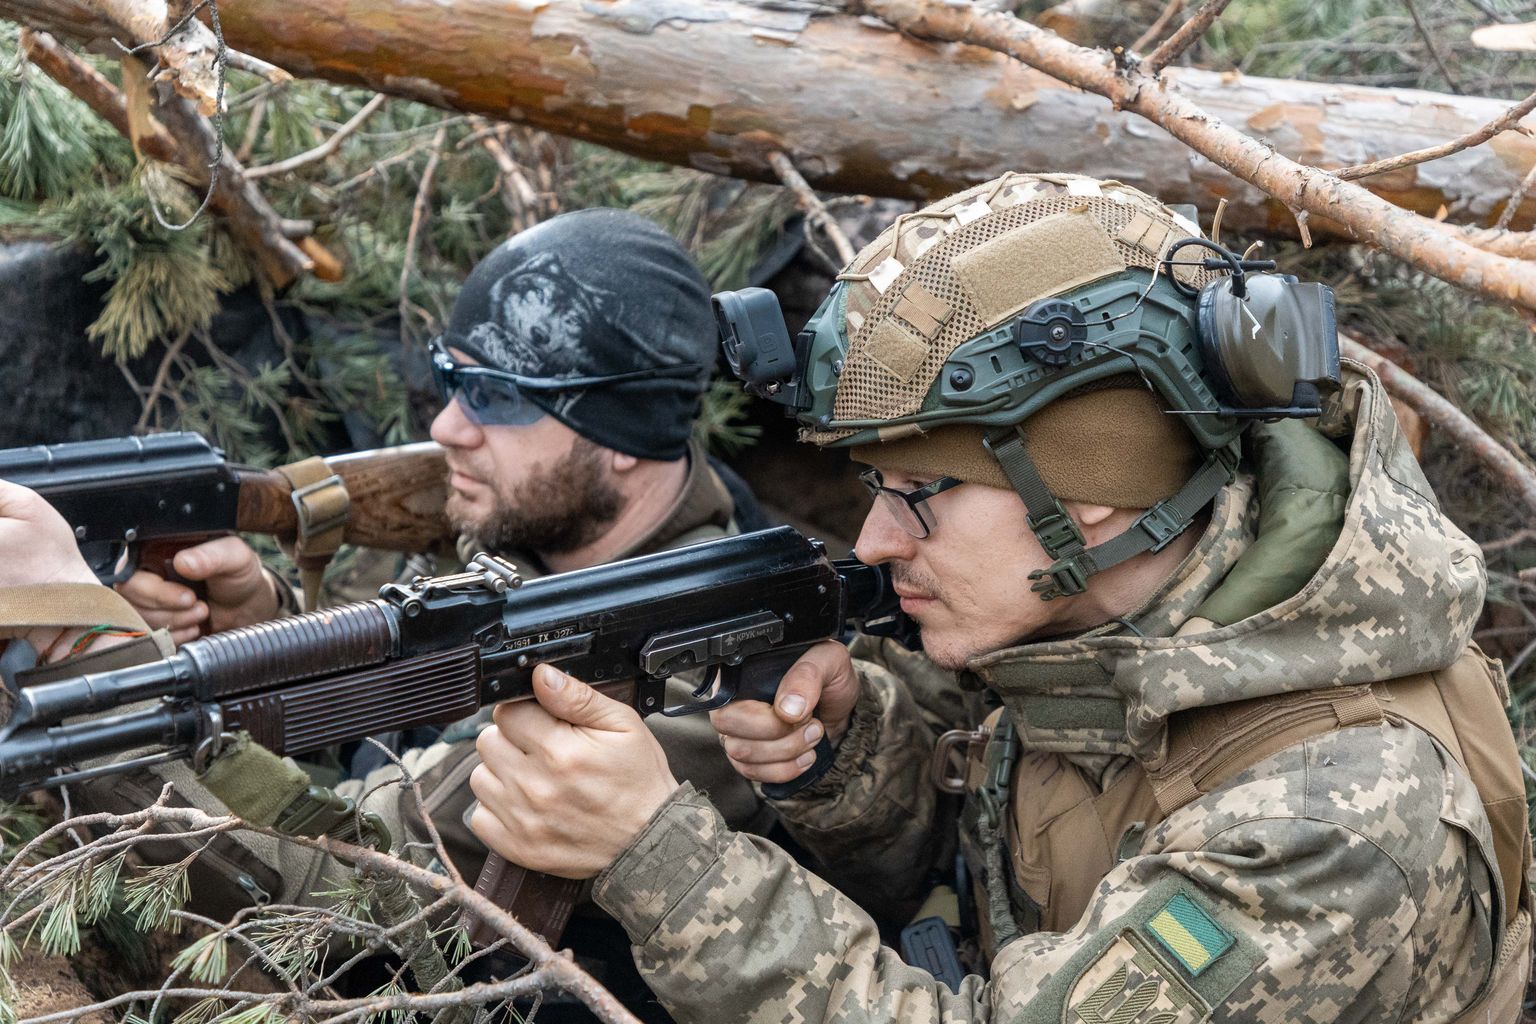 Для повышения квалификации отрядов территориальной обороны обучение проходит рядом с линией фронта. На фото украинские добровольцы отрабатывают боевую обстановку в лесах Кременной, что примерно в десяти километрах от фронта.